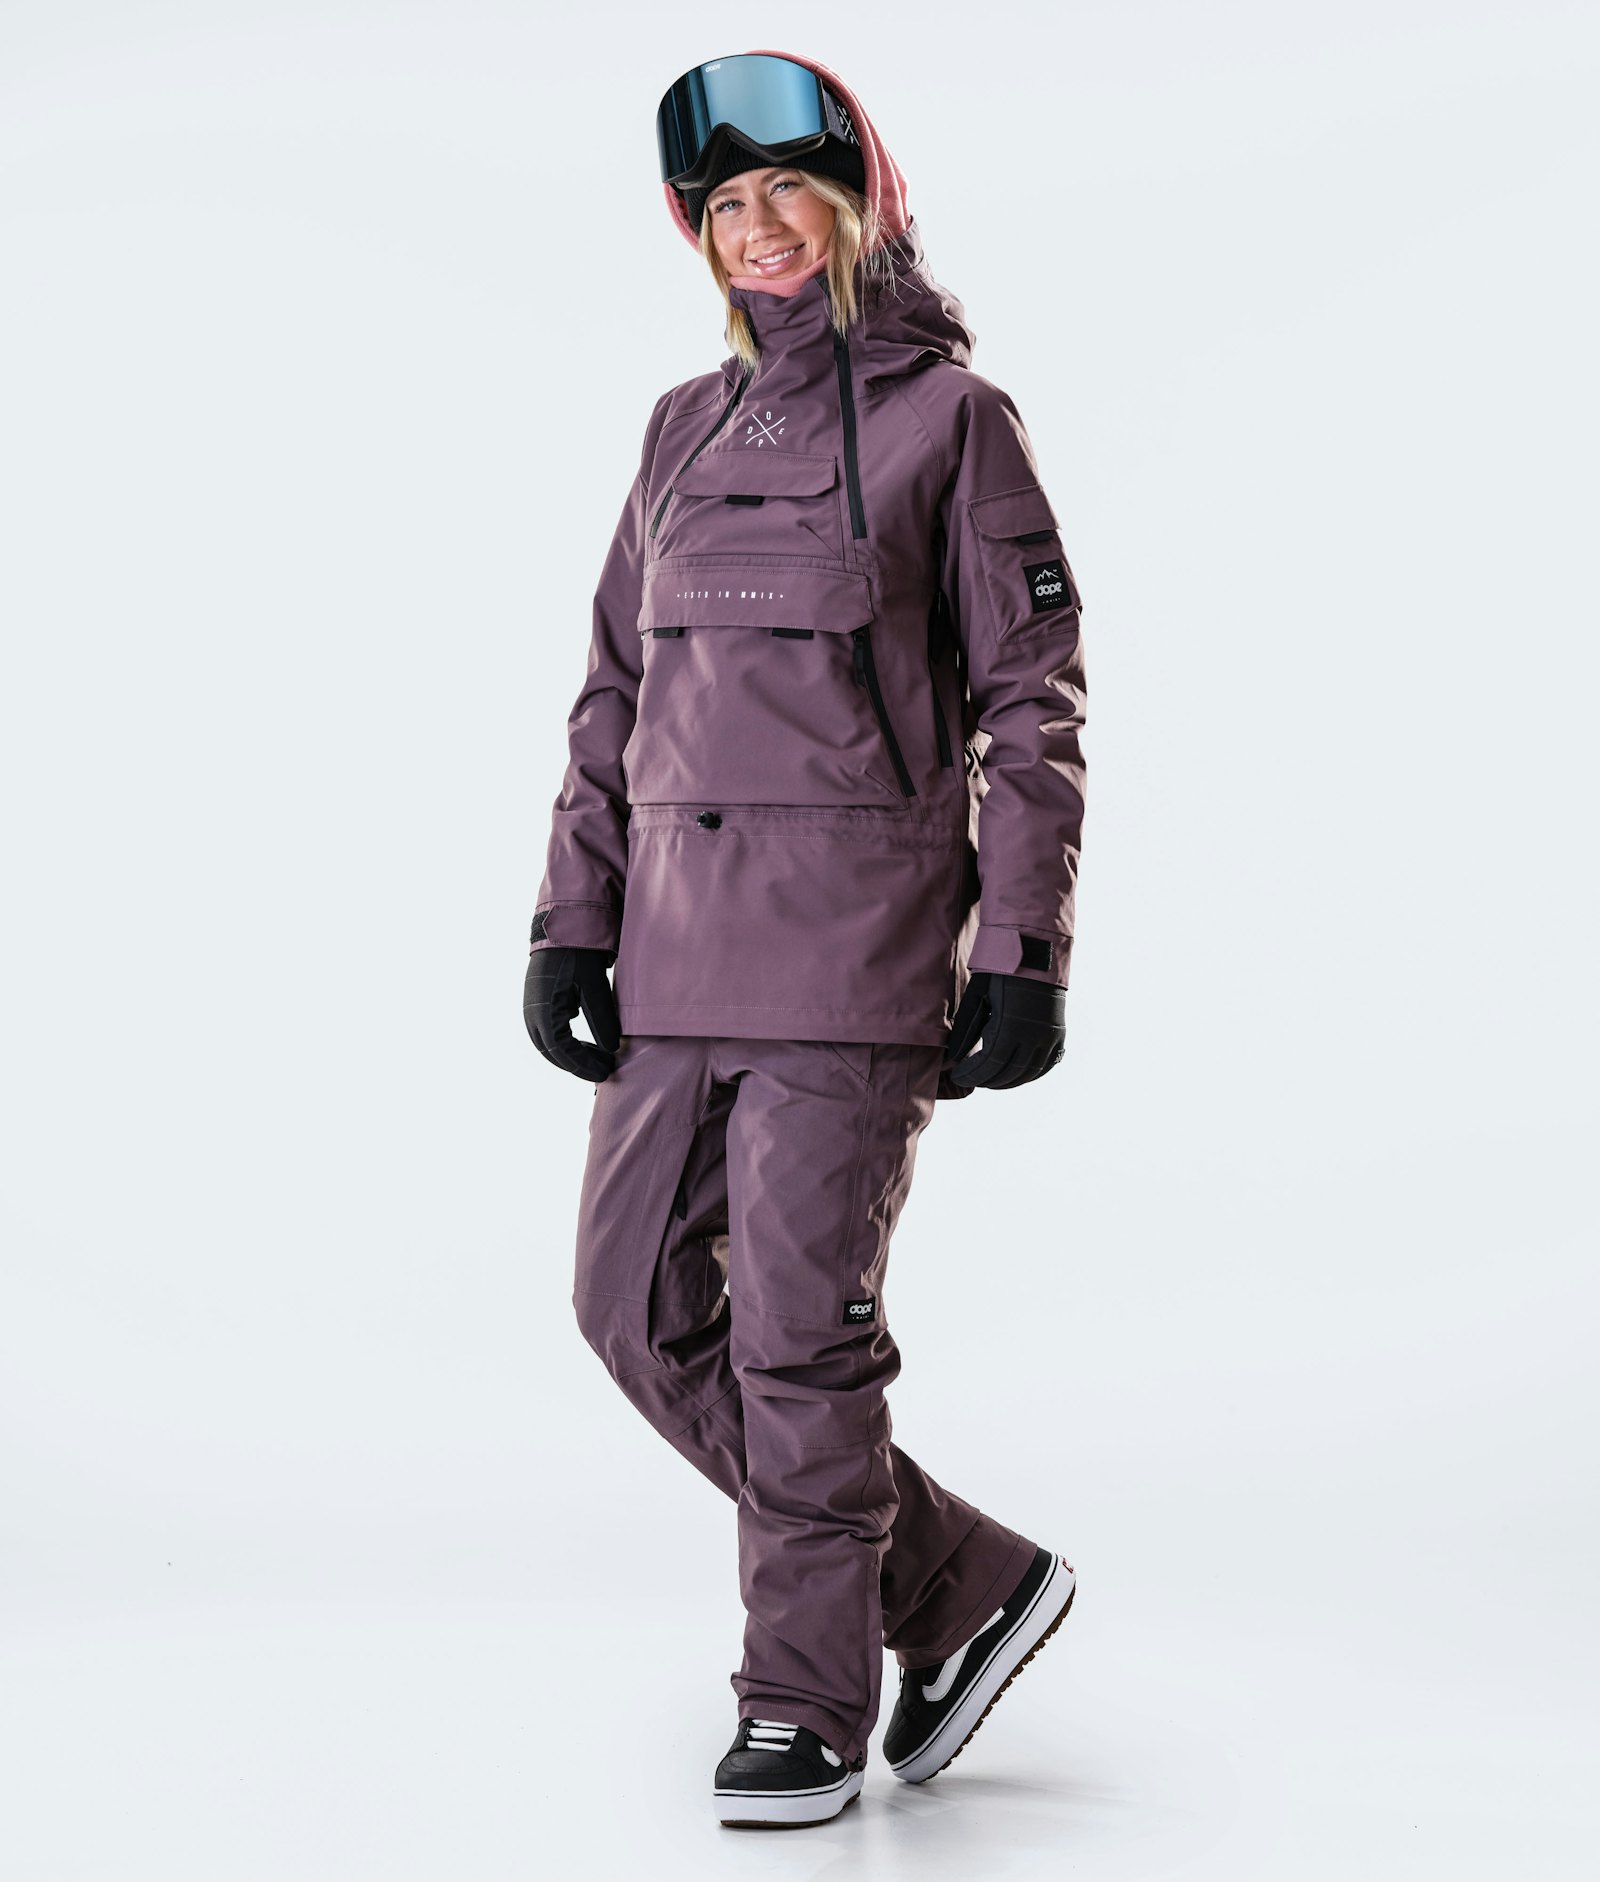 Akin W 2020 Veste Snowboard Femme Faded Grape